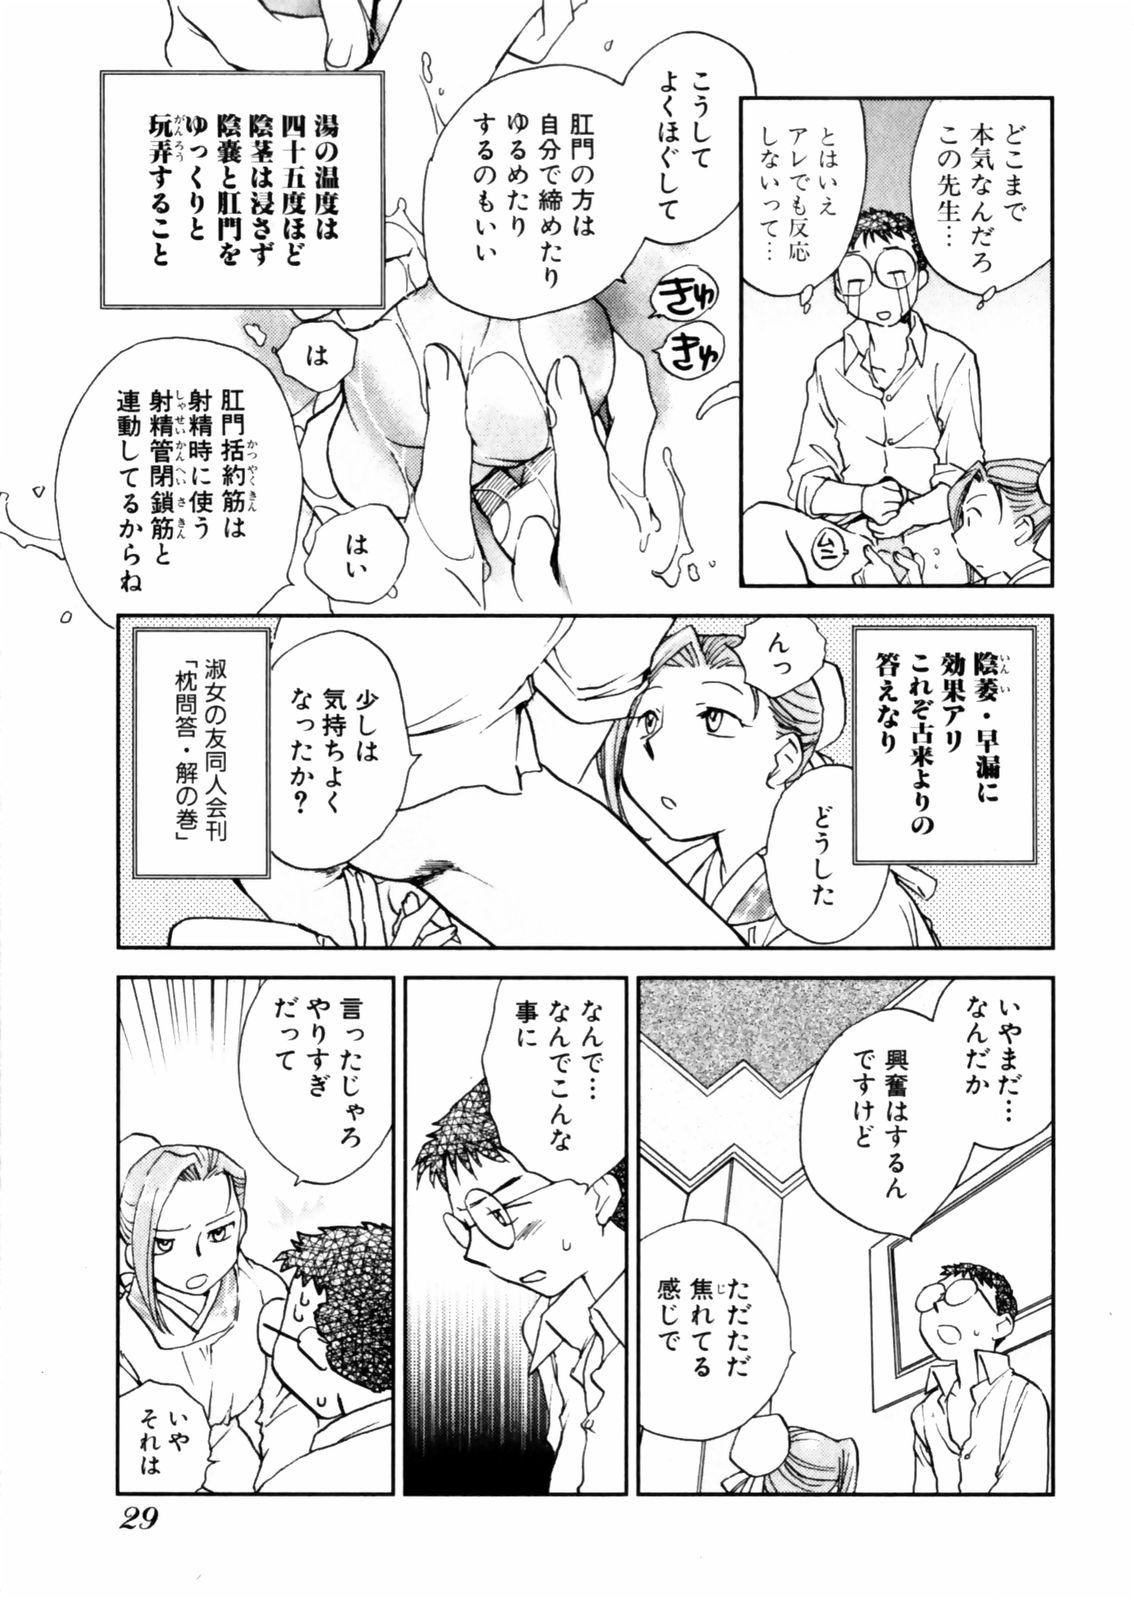 [Okano Ahiru] Hanasake ! Otome Juku (Otome Private Tutoring School) Vol.2 30